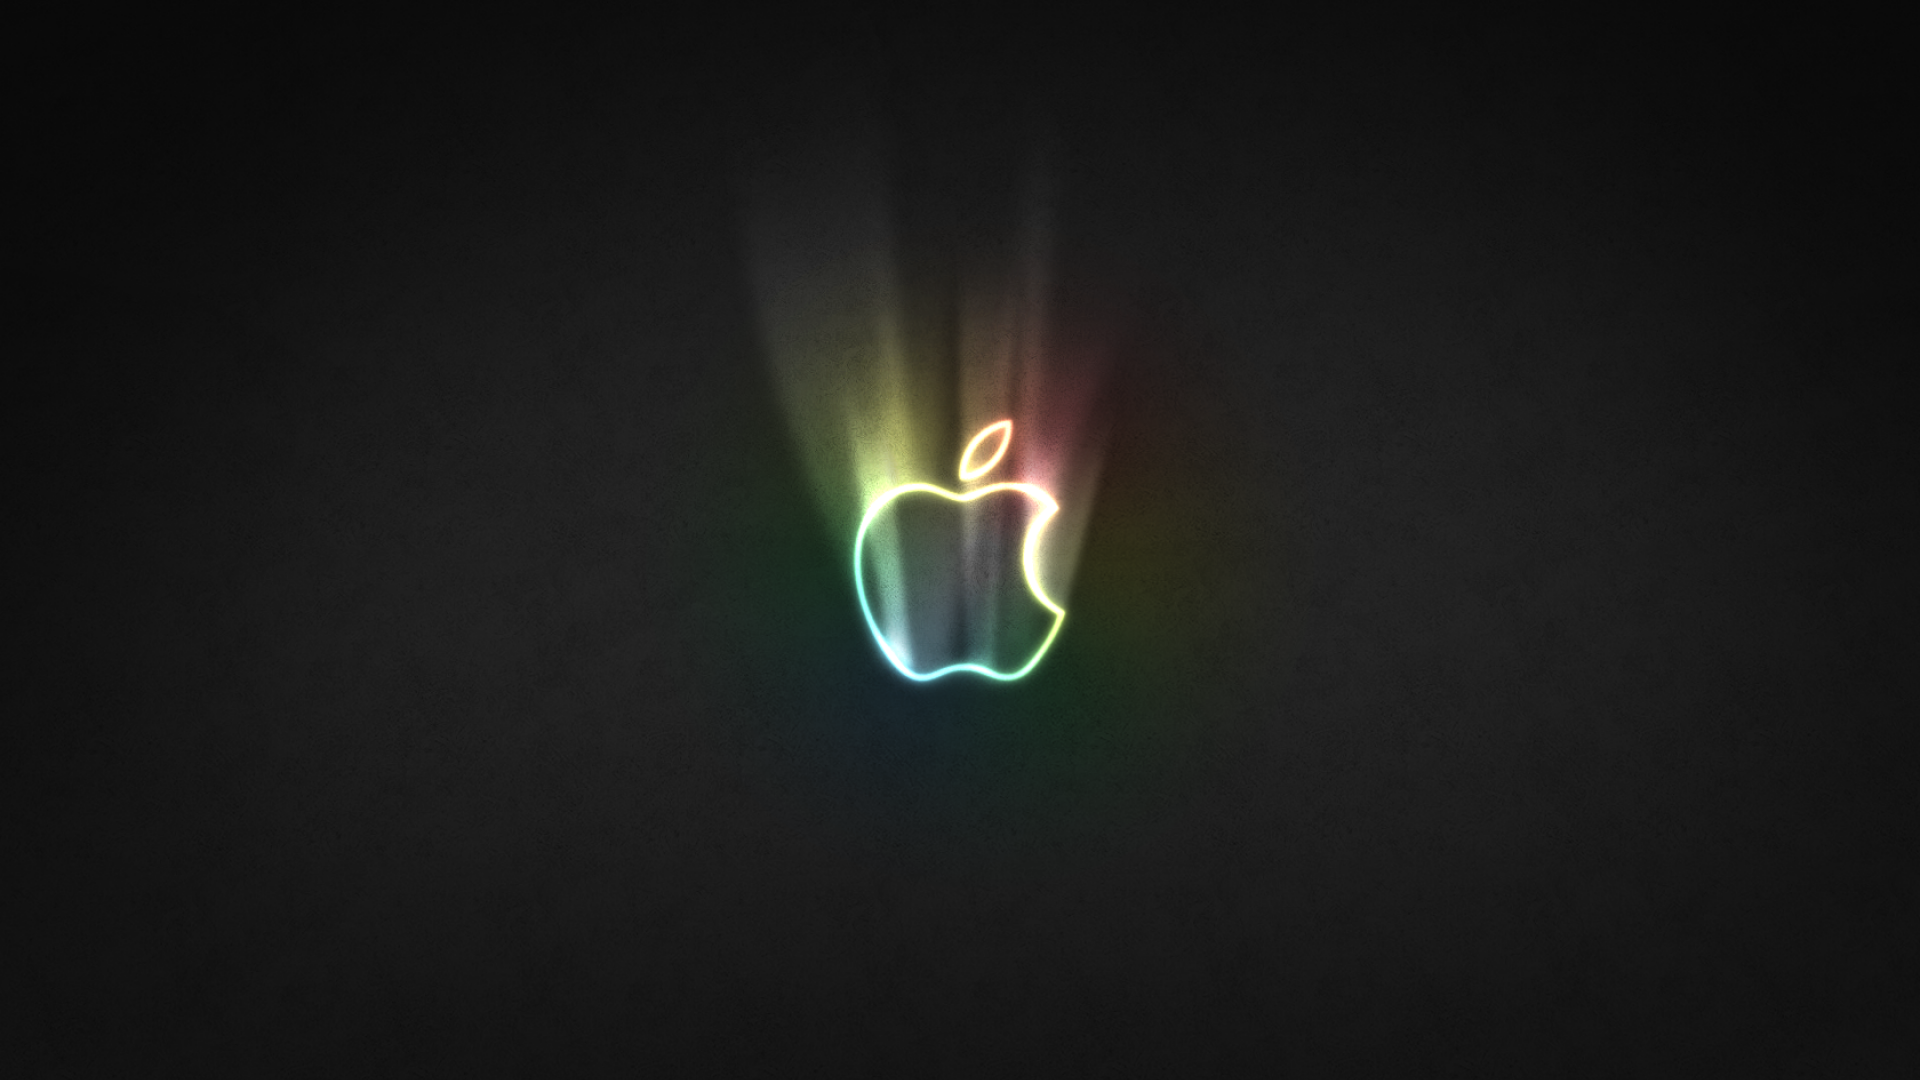 Apple glowing logo wallpaper   HD Wallpapers